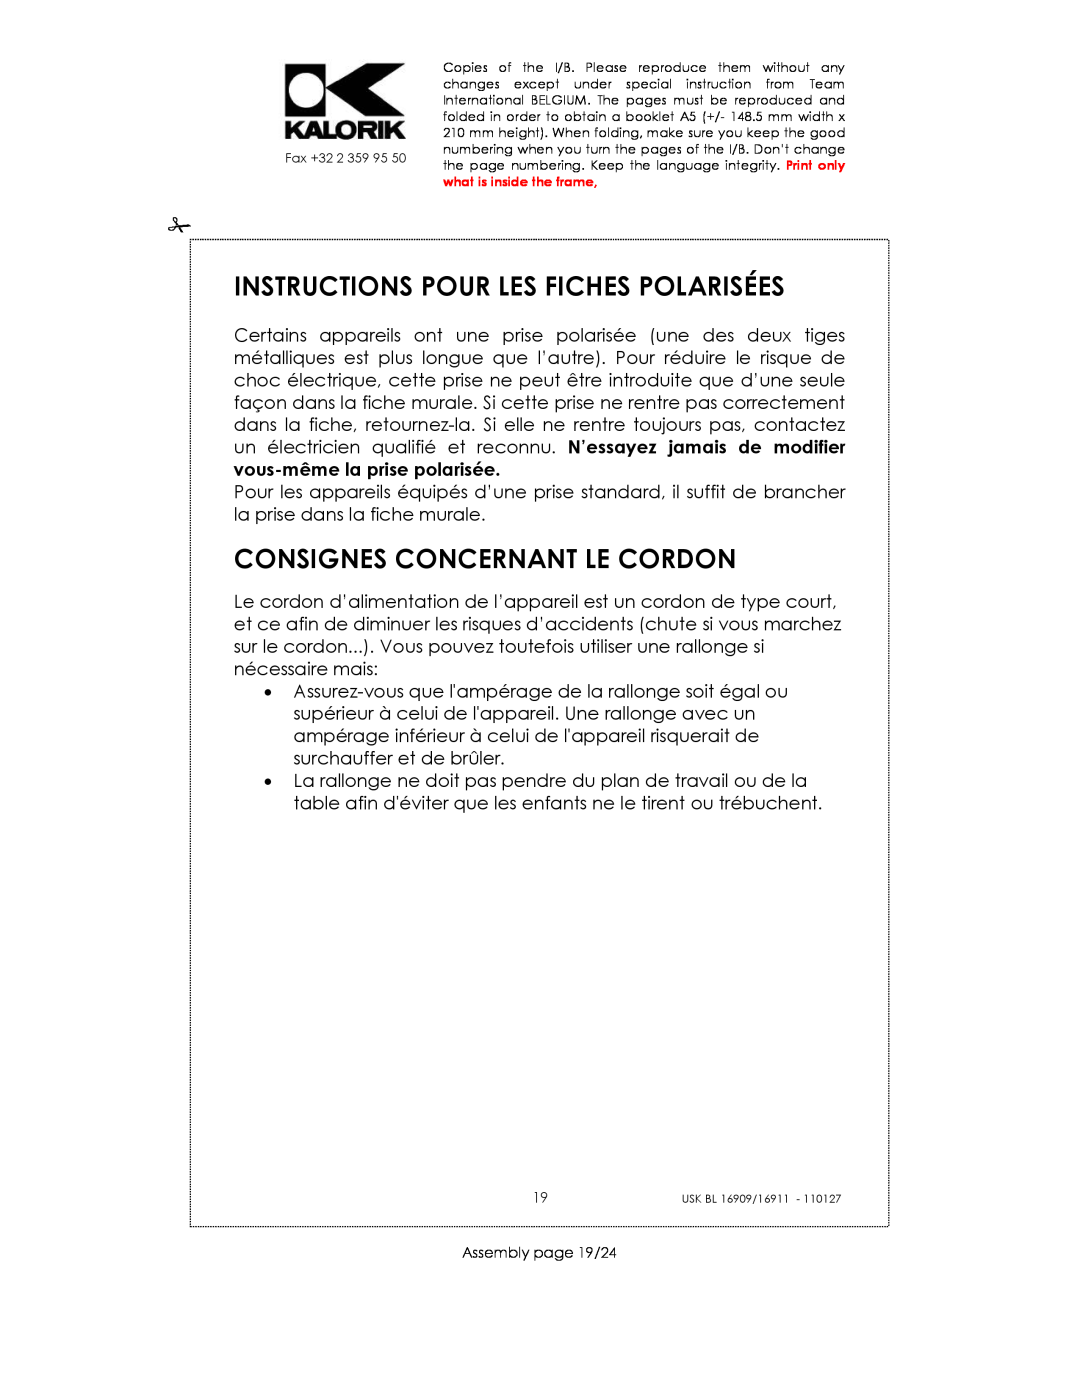 Kalorik USK BL 16911 manual Instructions Pour Les Fiches Polarisées, Consignes Concernant Le Cordon, Assembly page 19/24 